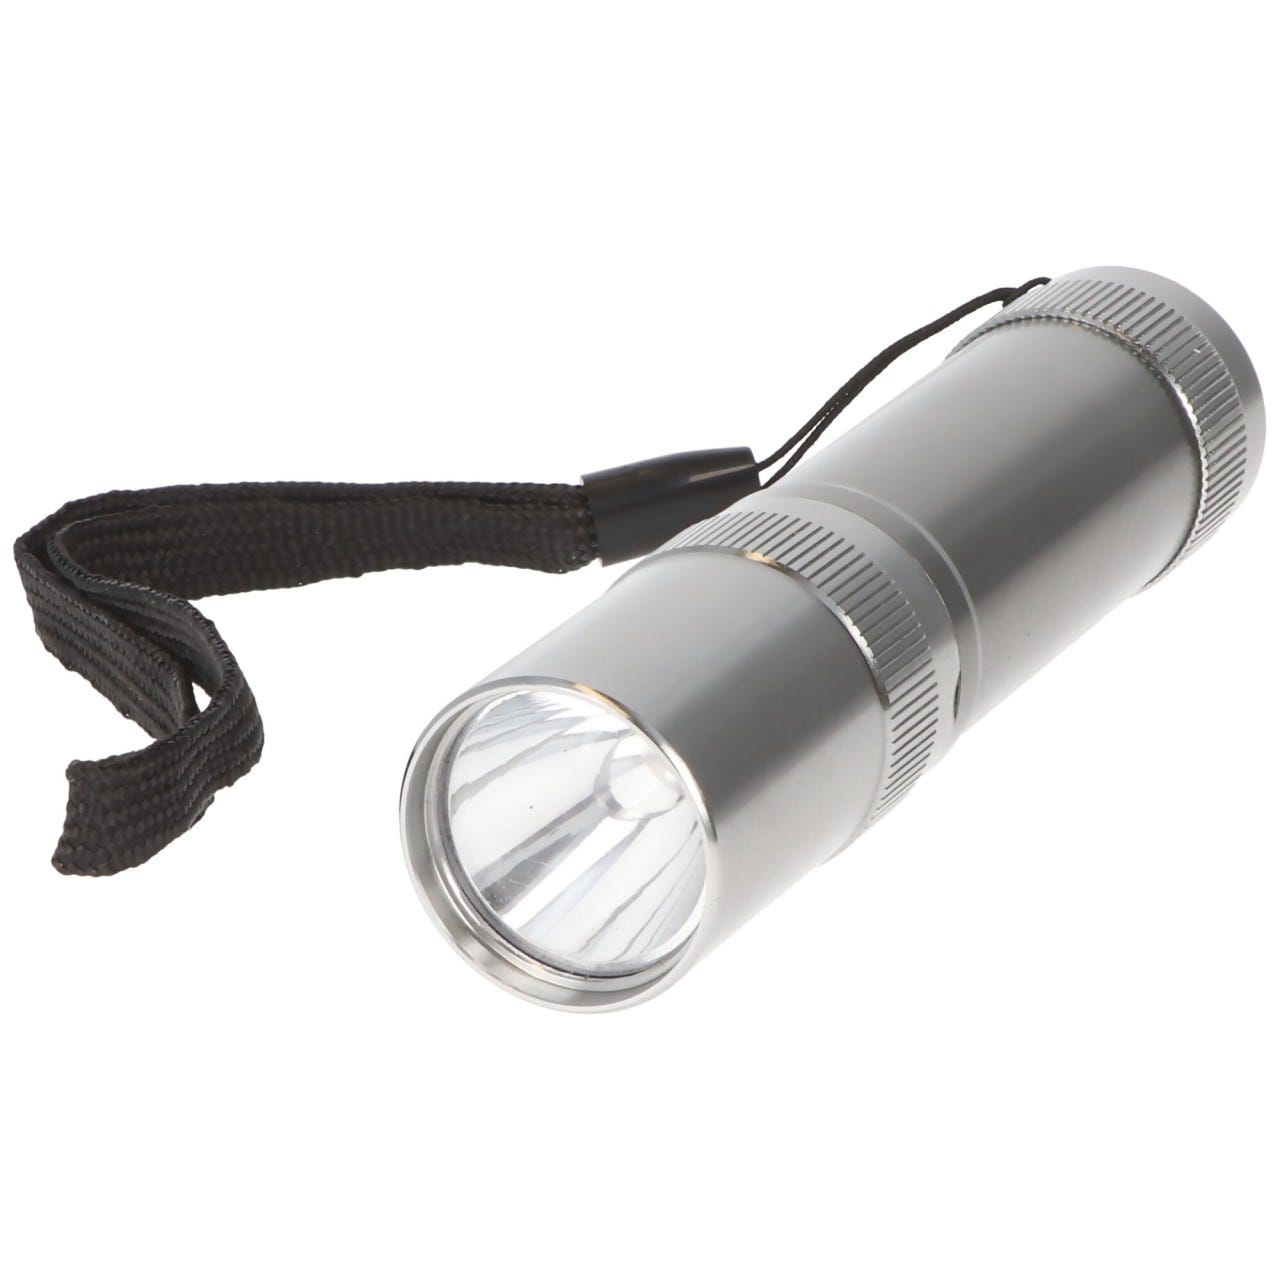 Lampe torche LED Basic 1 watt LED, élégant boîtier en aluminium